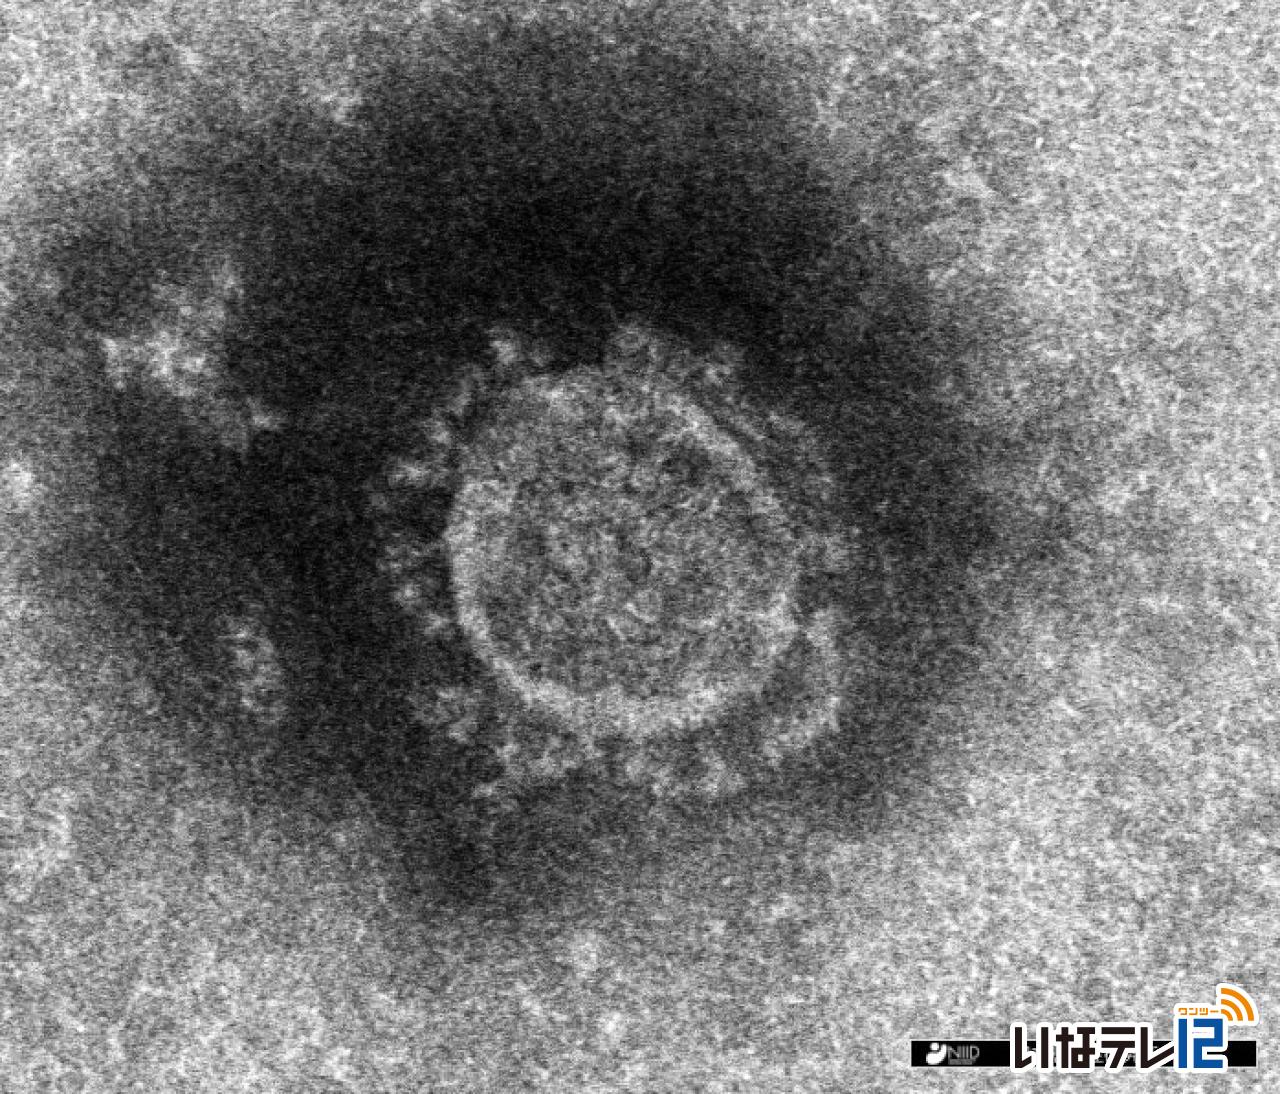 長野県内で上伊那の３７人を含む３０３人の新型コロナウイルス感染確認